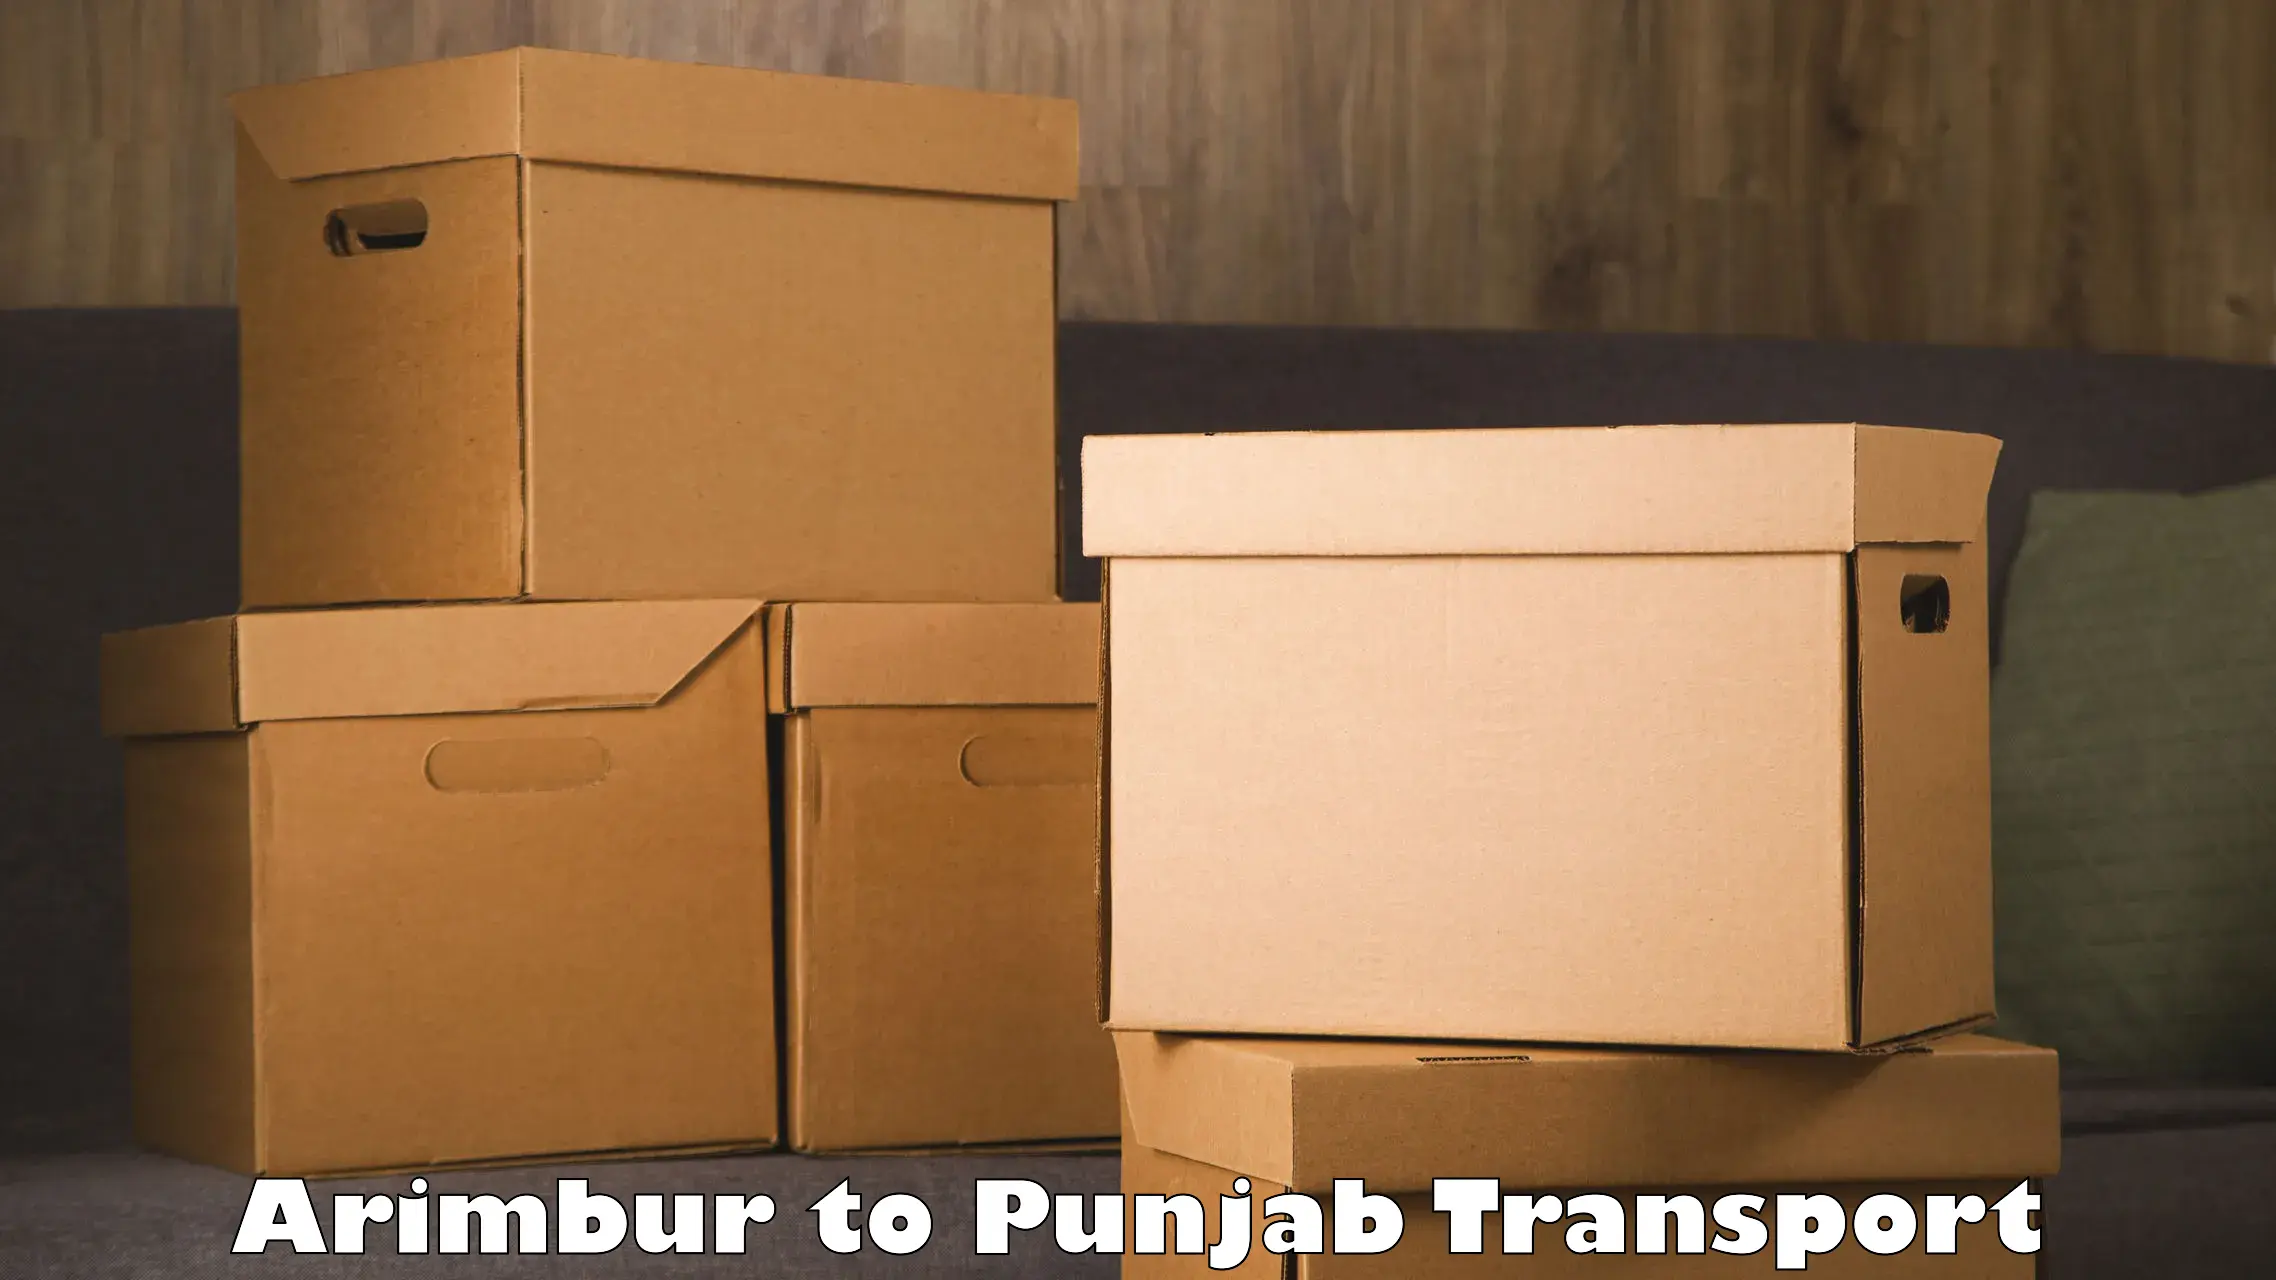 Truck transport companies in India Arimbur to Punjab